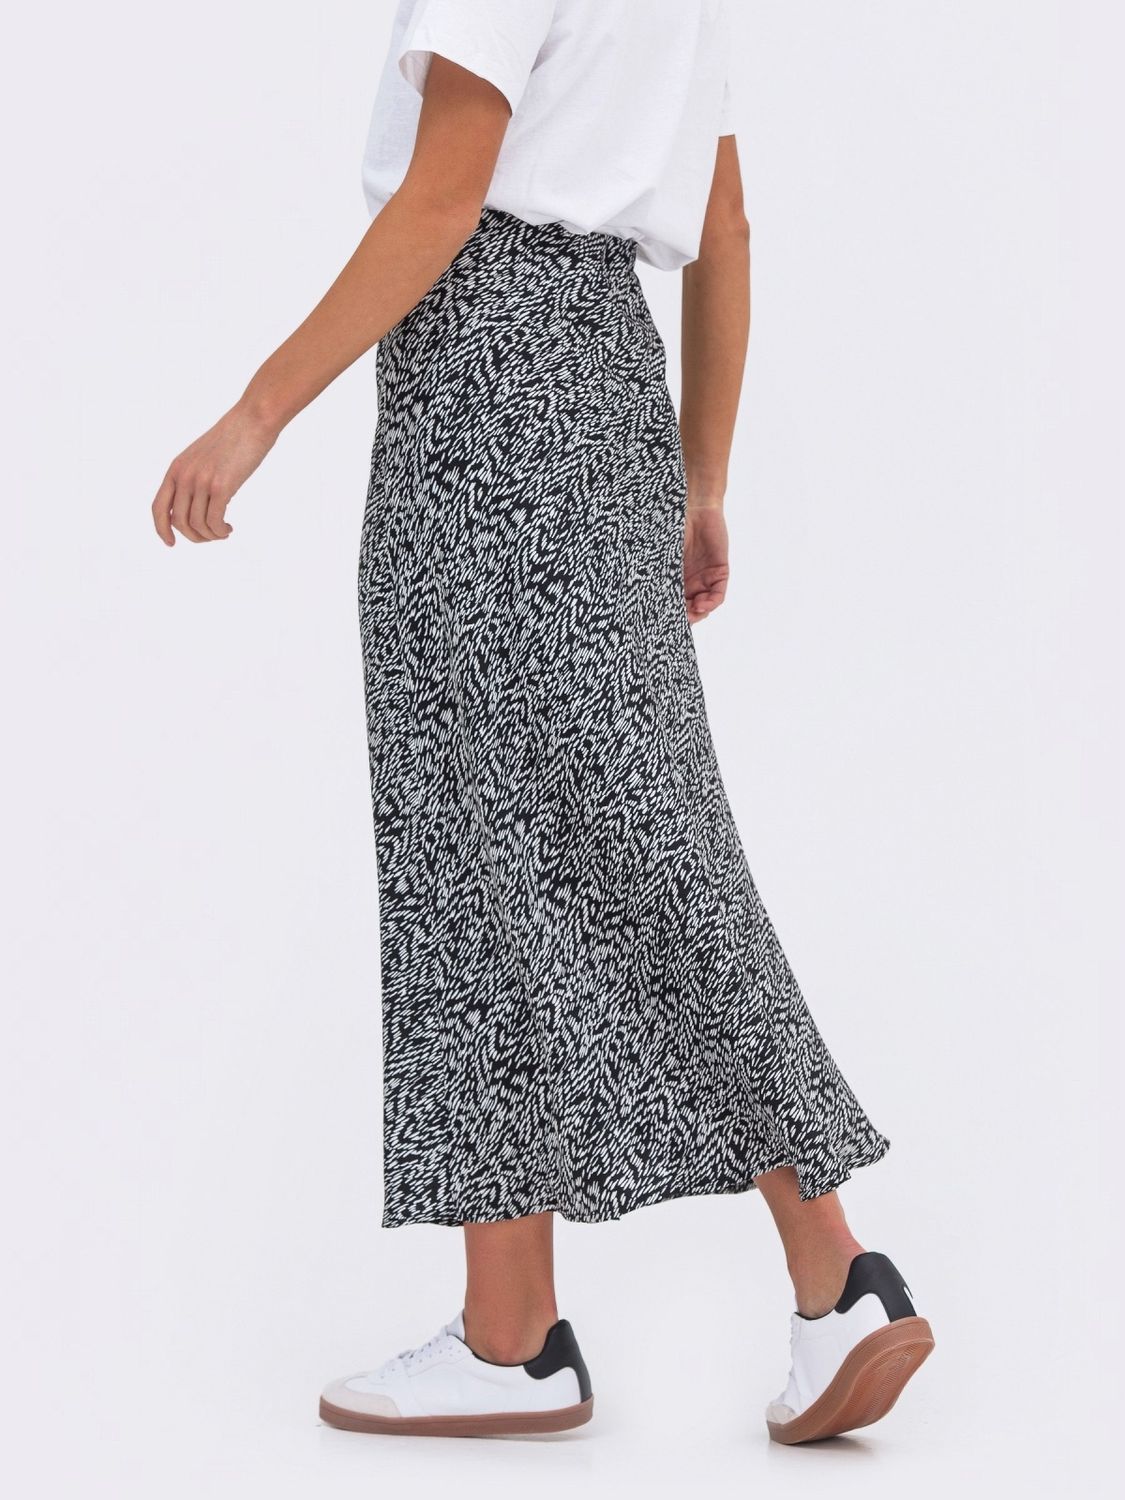 Женская юбка-полусолнце из сатин-шелка - фото